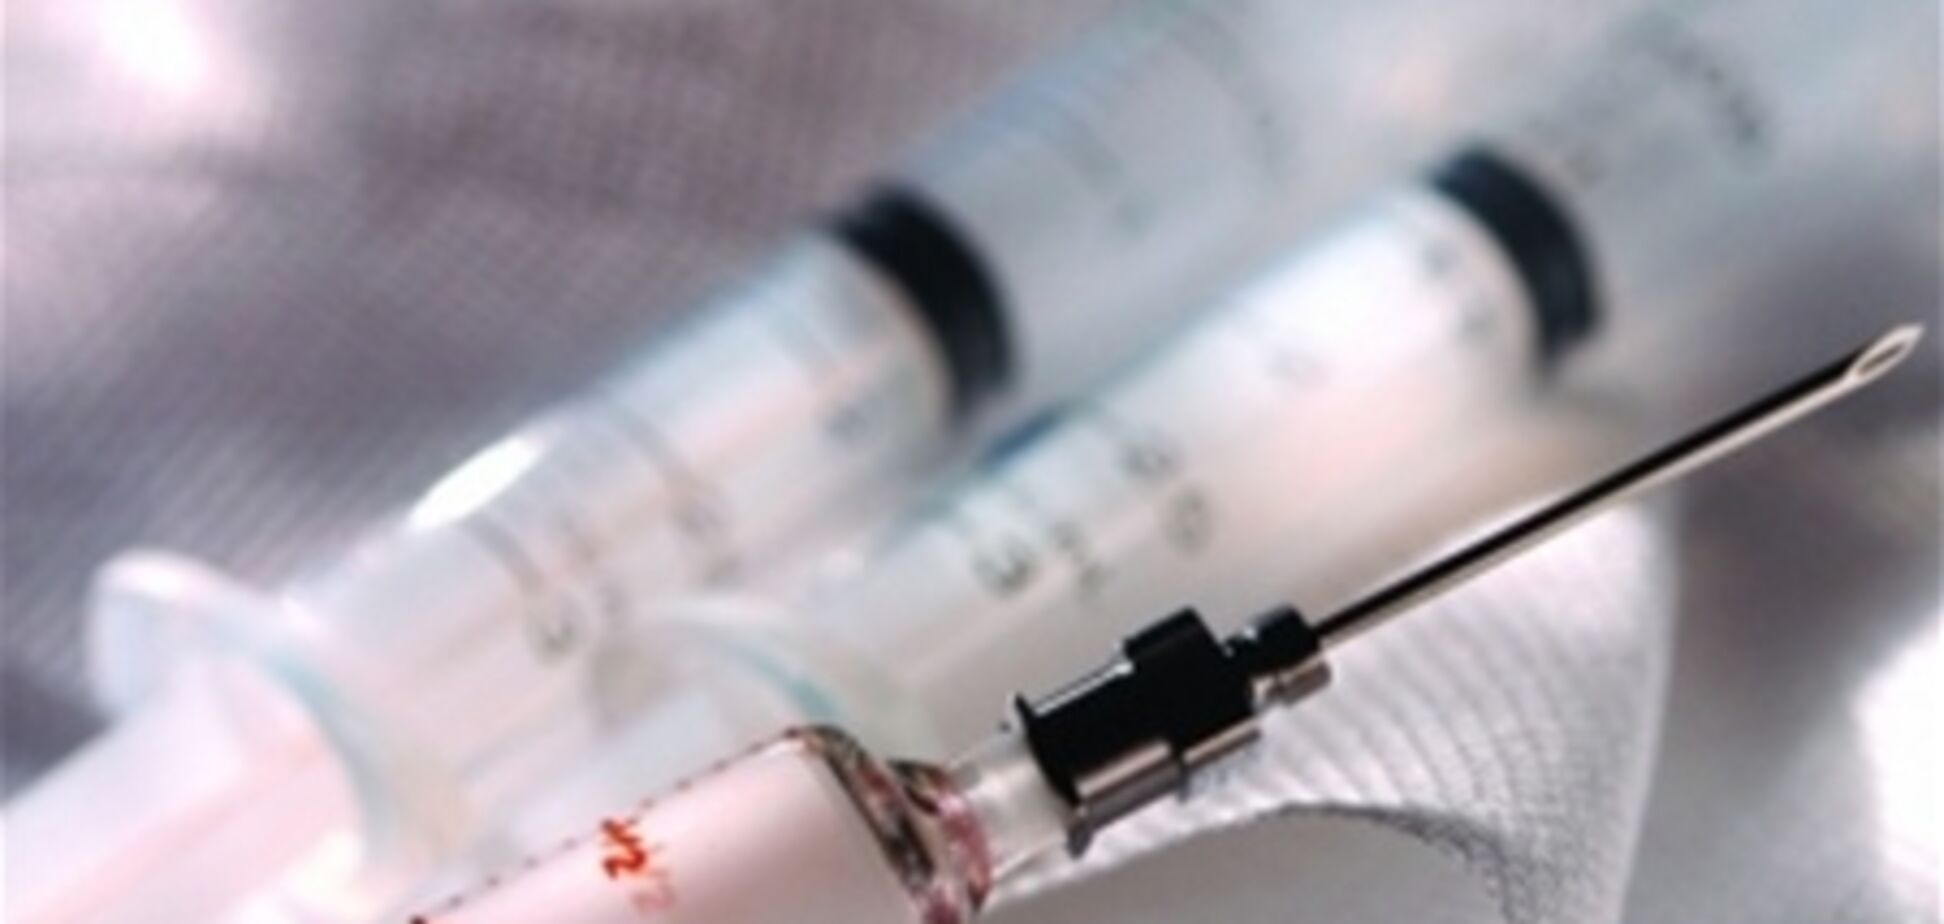 СМИ: вакцина от Минздрава убила 11 детей